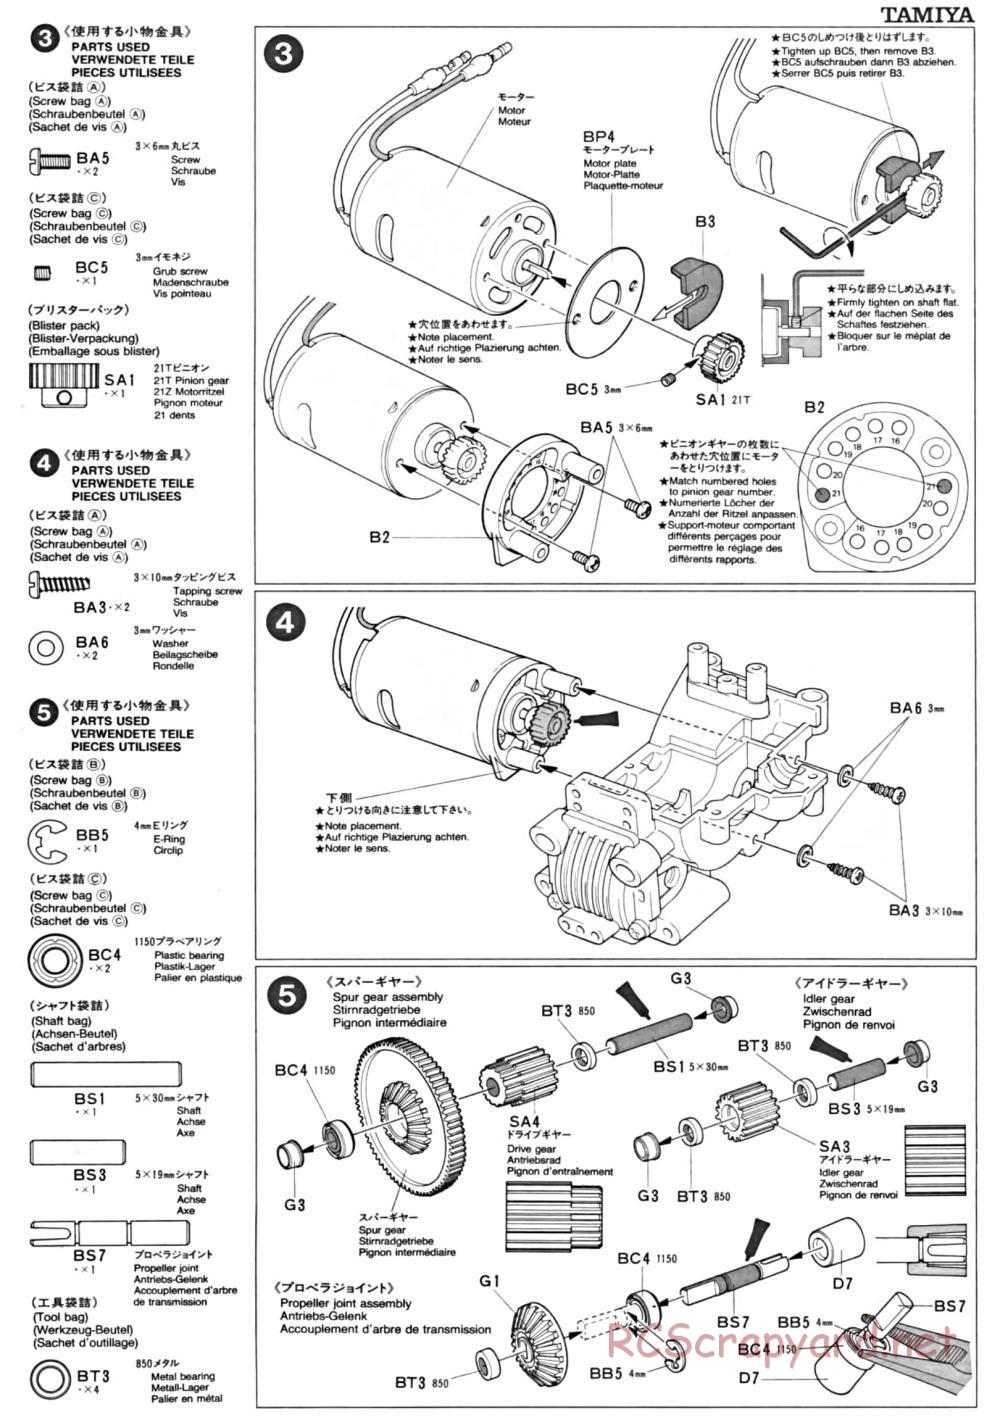 Tamiya - TA-01 Chassis - Manual - Page 2